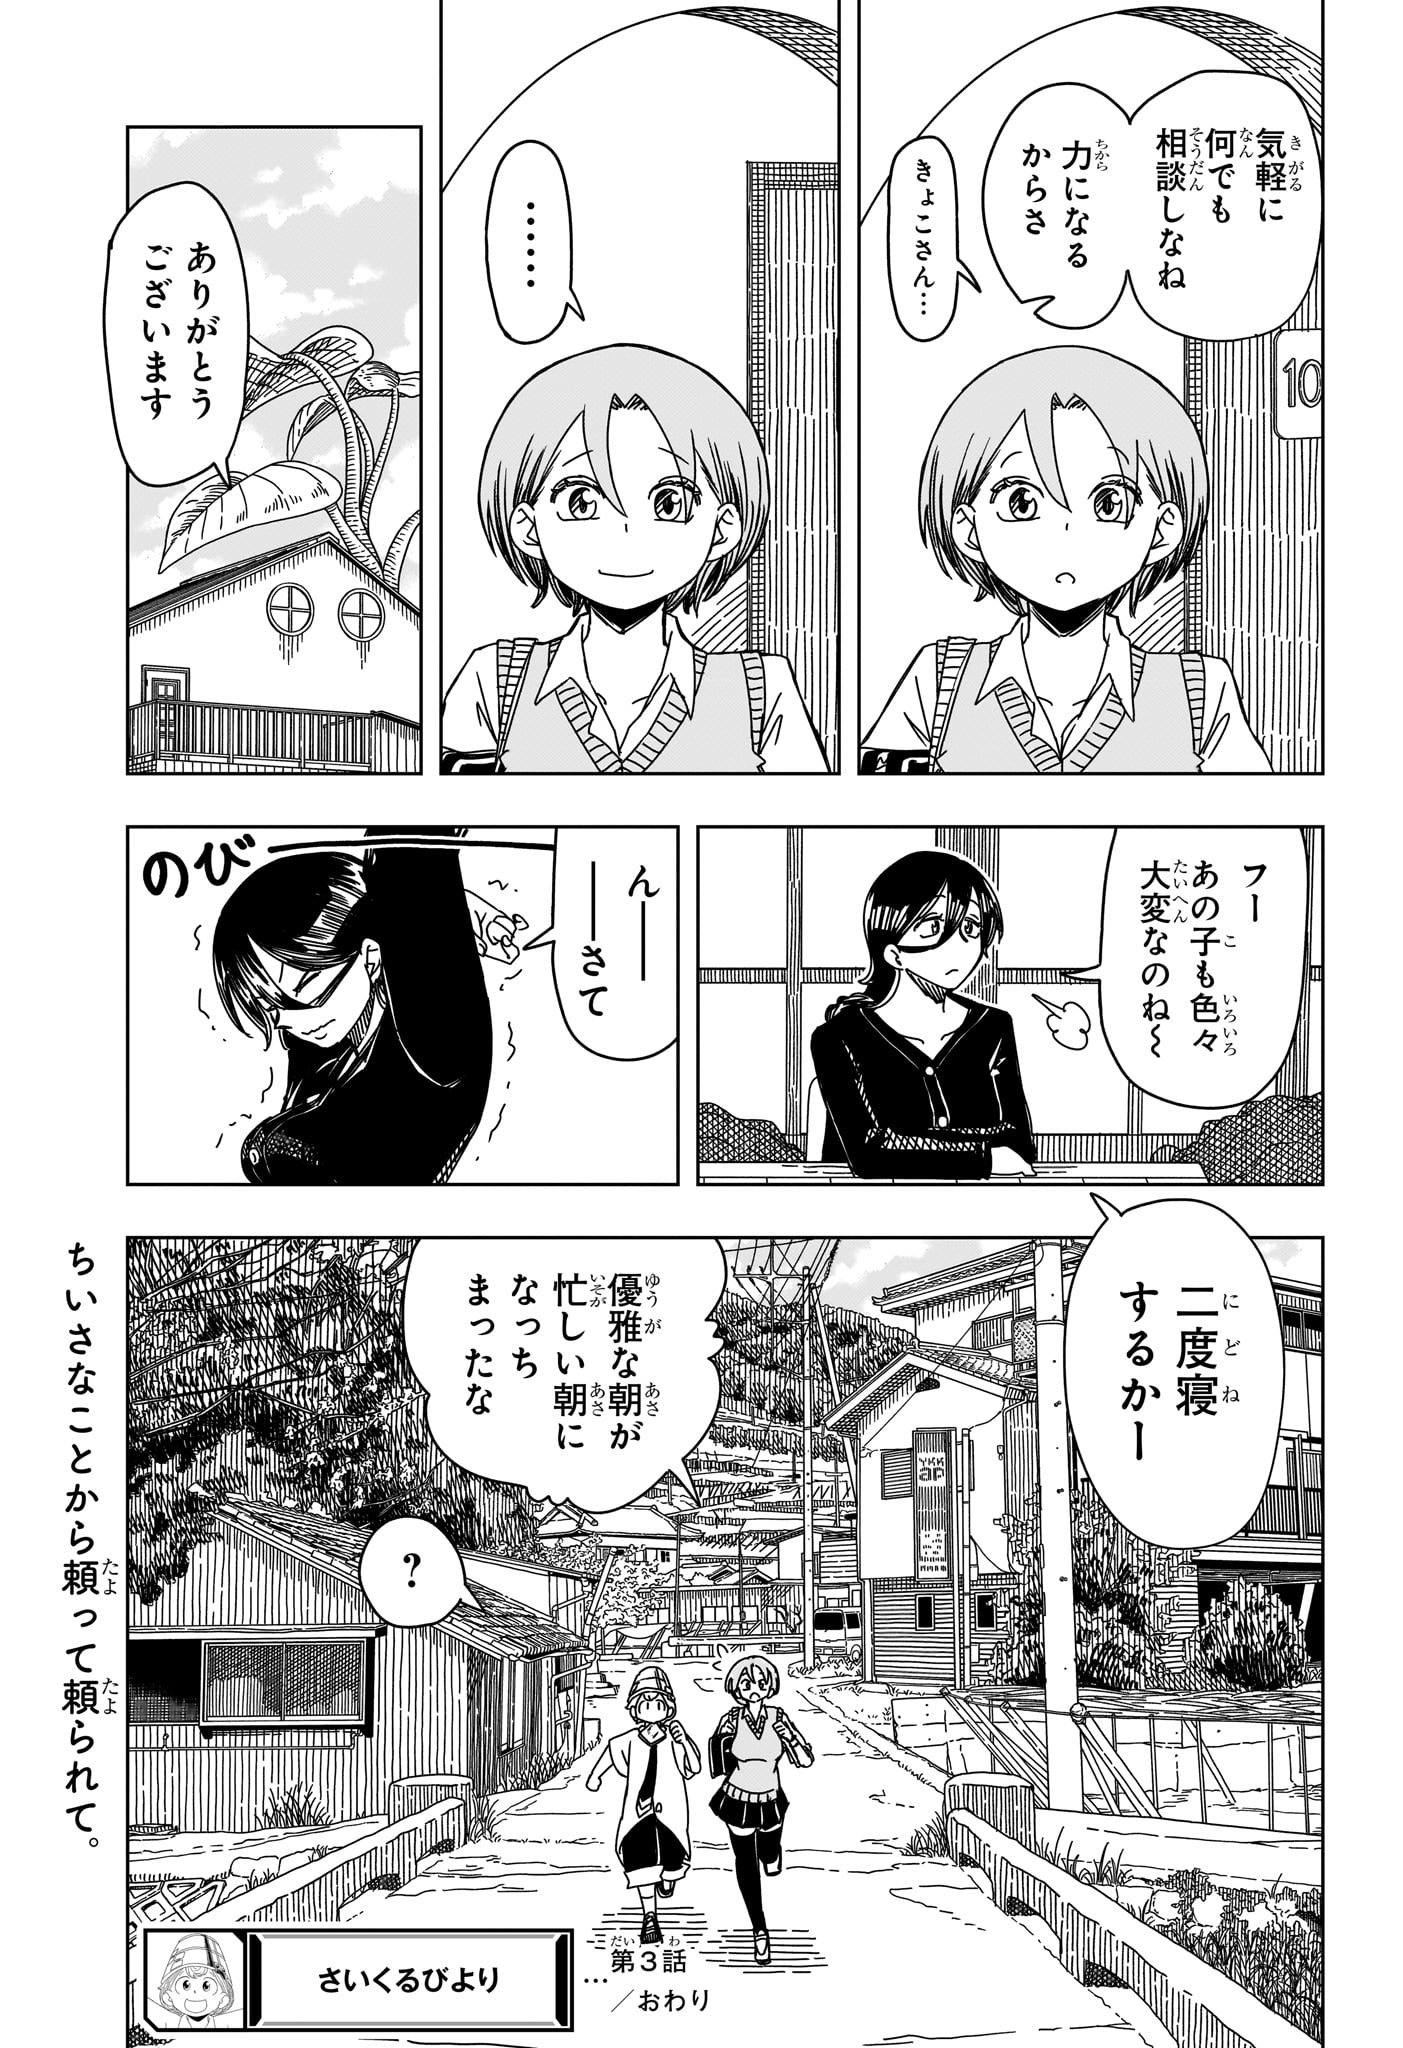 Saikuru Biyori - Chapter 3 - Page 23